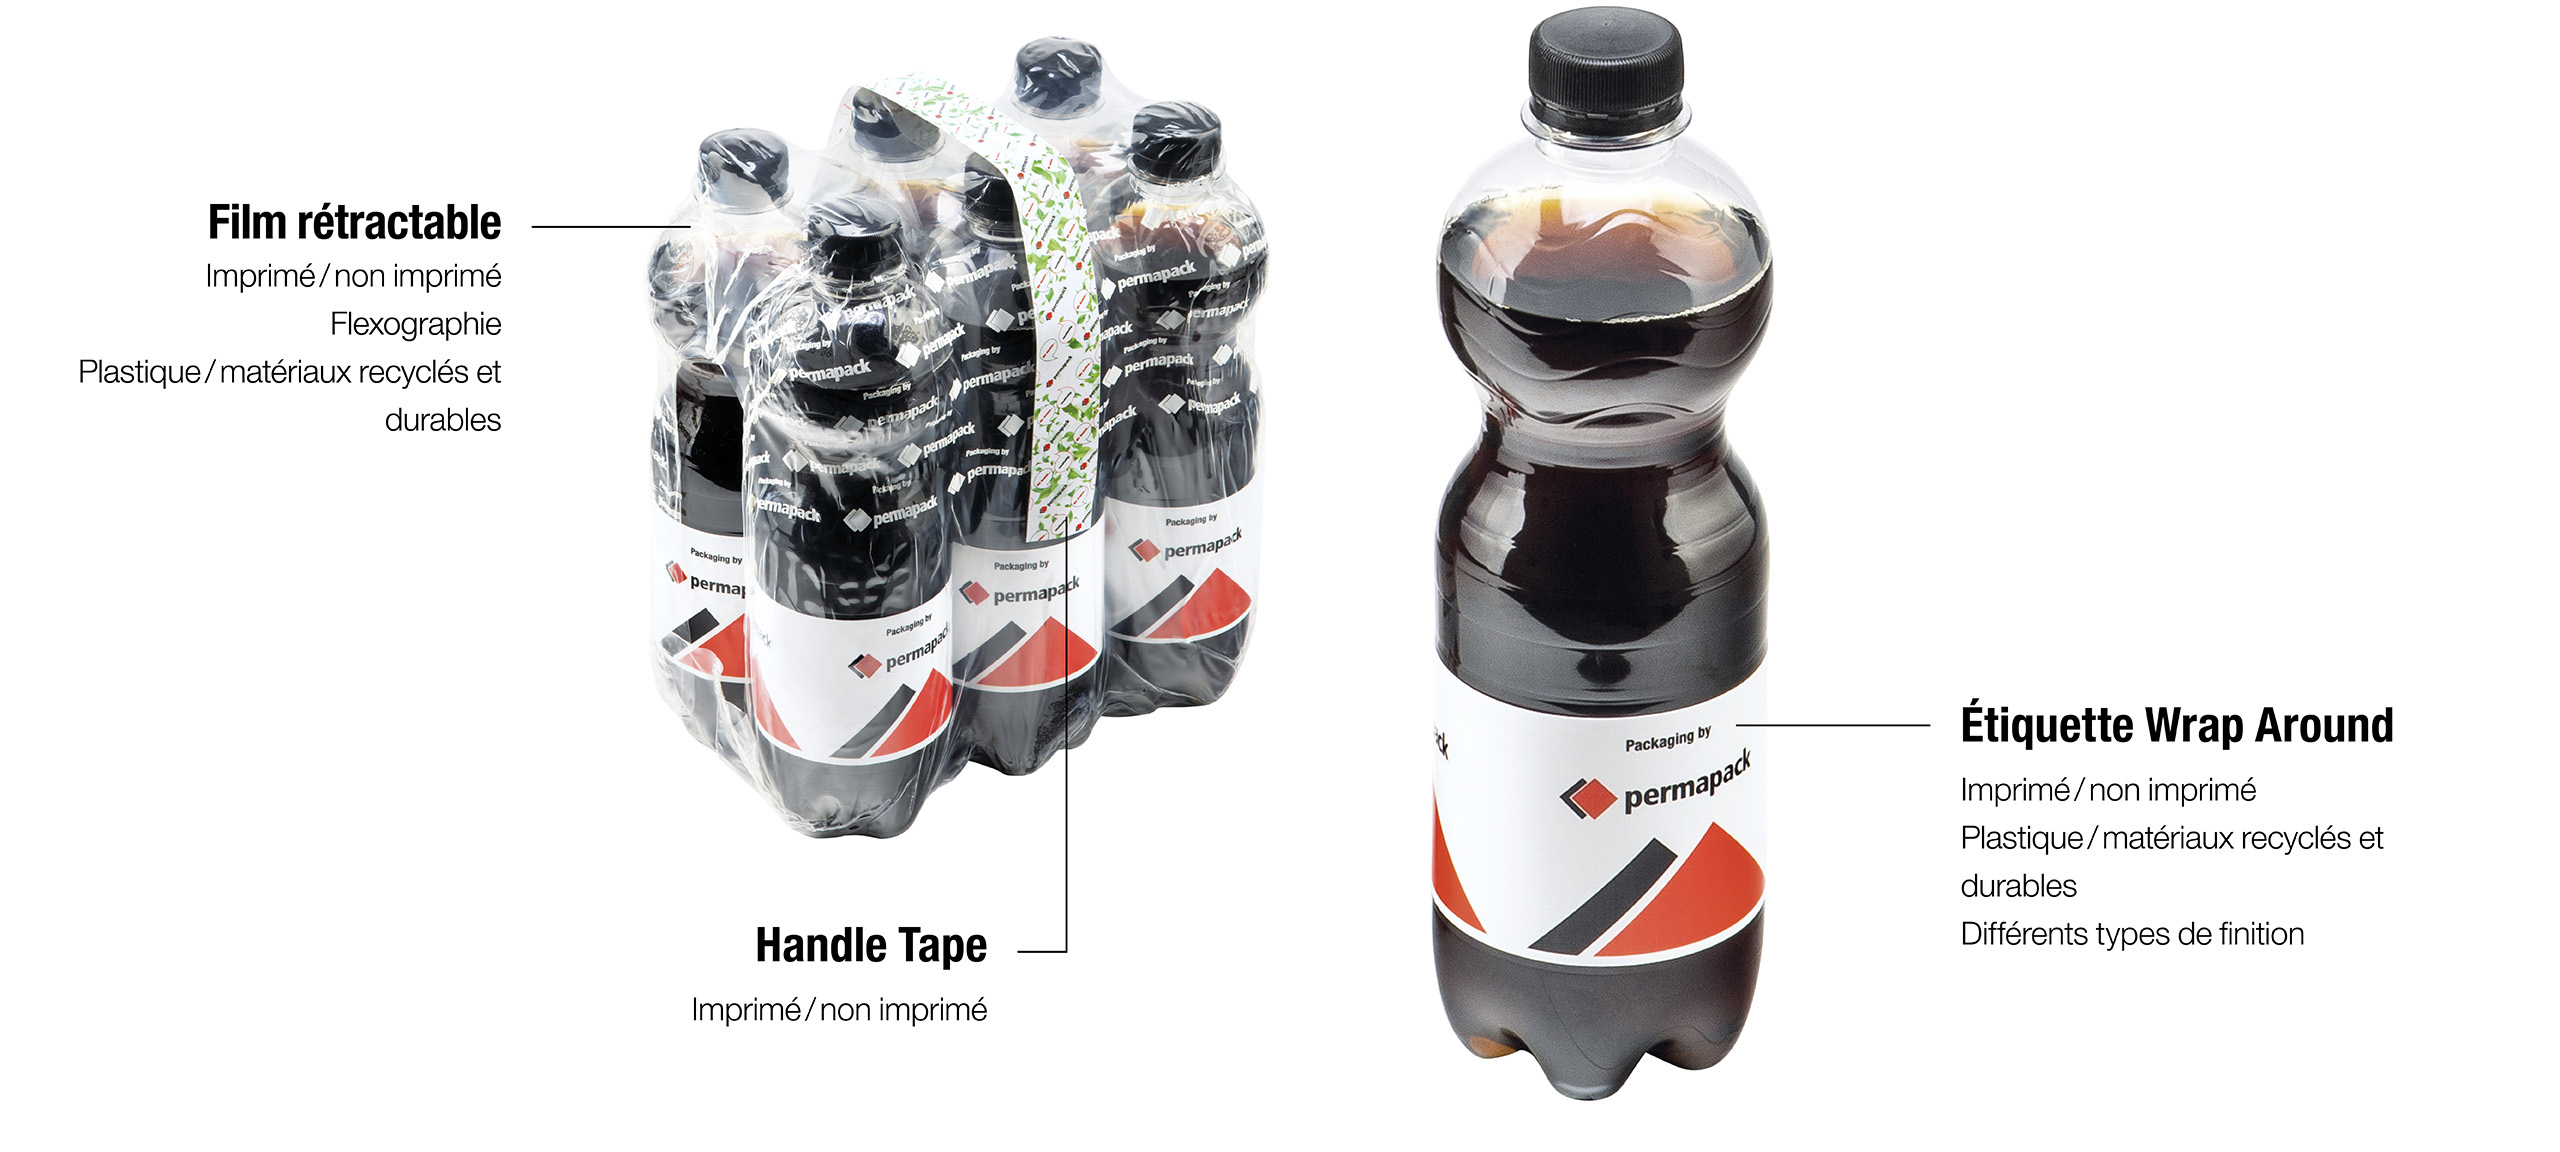 Films rétractables, handle tape et étiquettes wrap around pour le secteur des boissons.